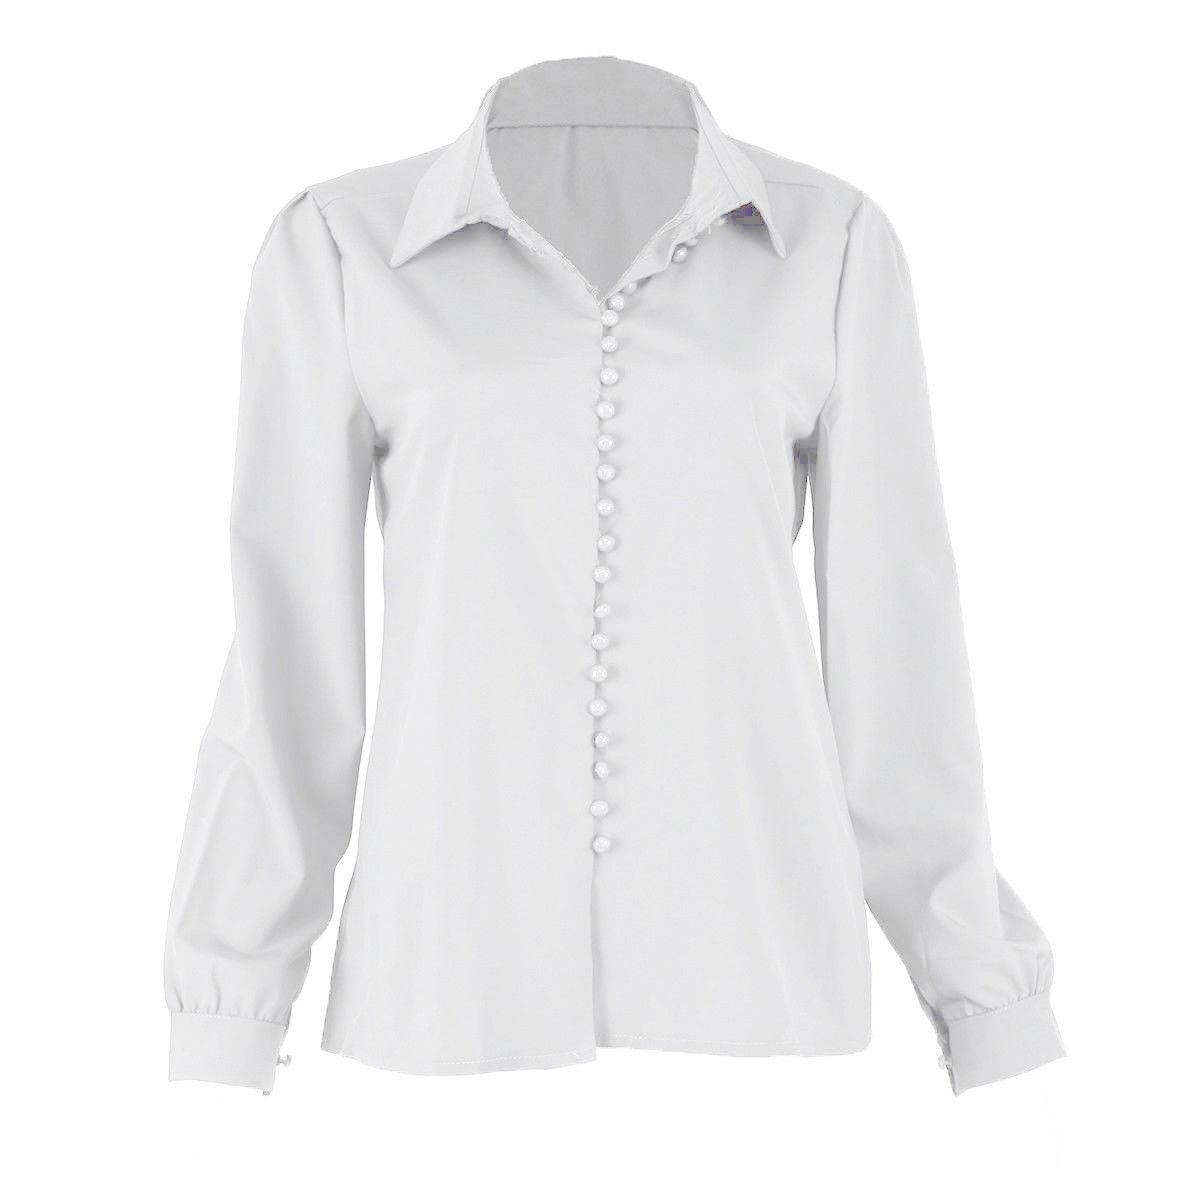 Озон белая блузка. Reiss блузка rn114836. Белая рубашка женская. Блузка с воротником. Рубашка с воротником женская.